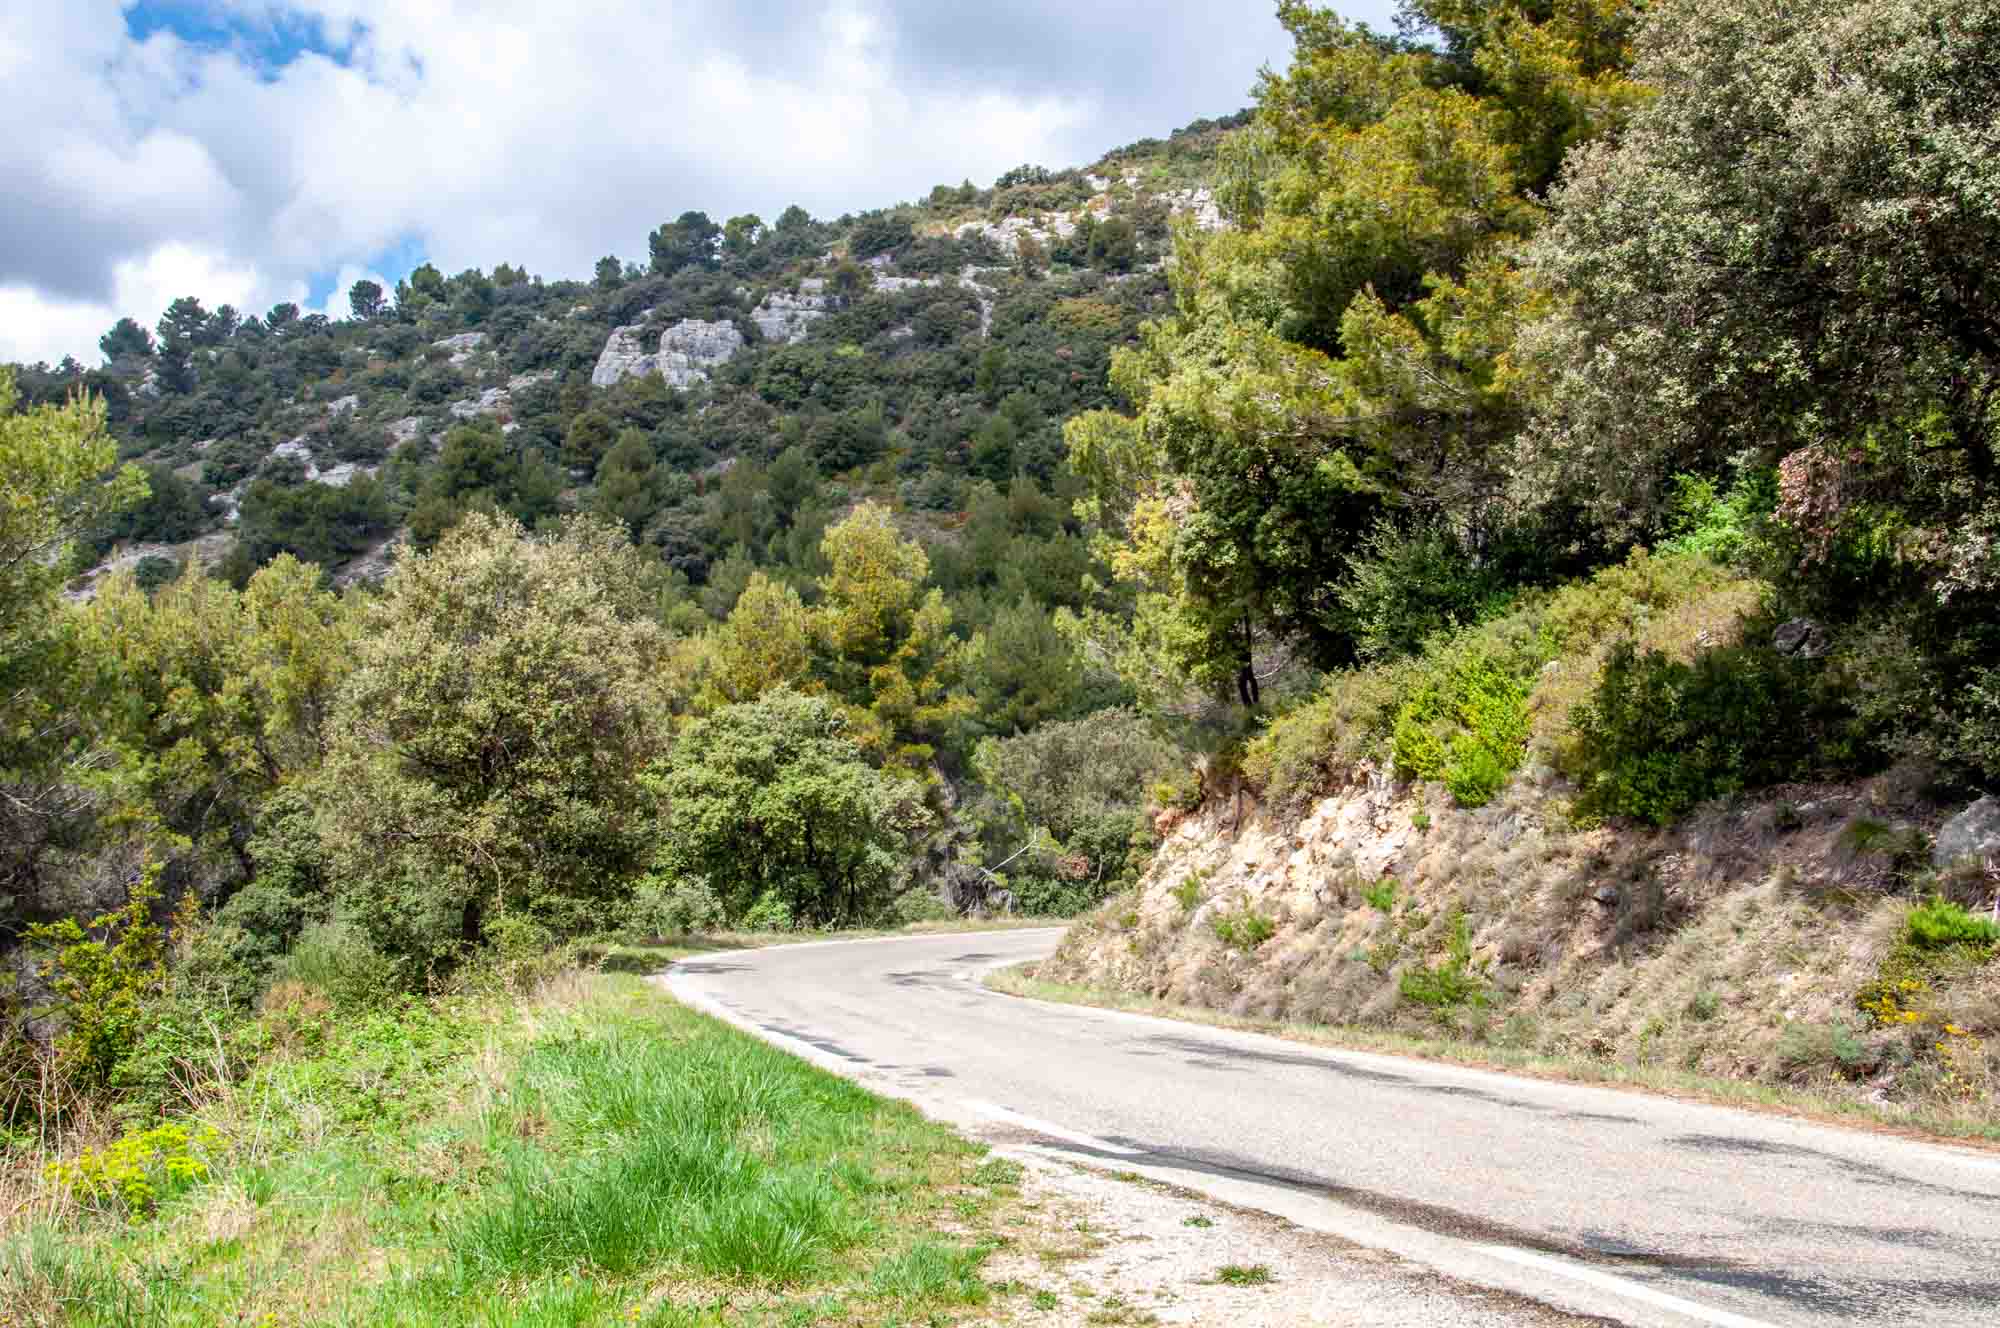 Narrow roadway along a hillside